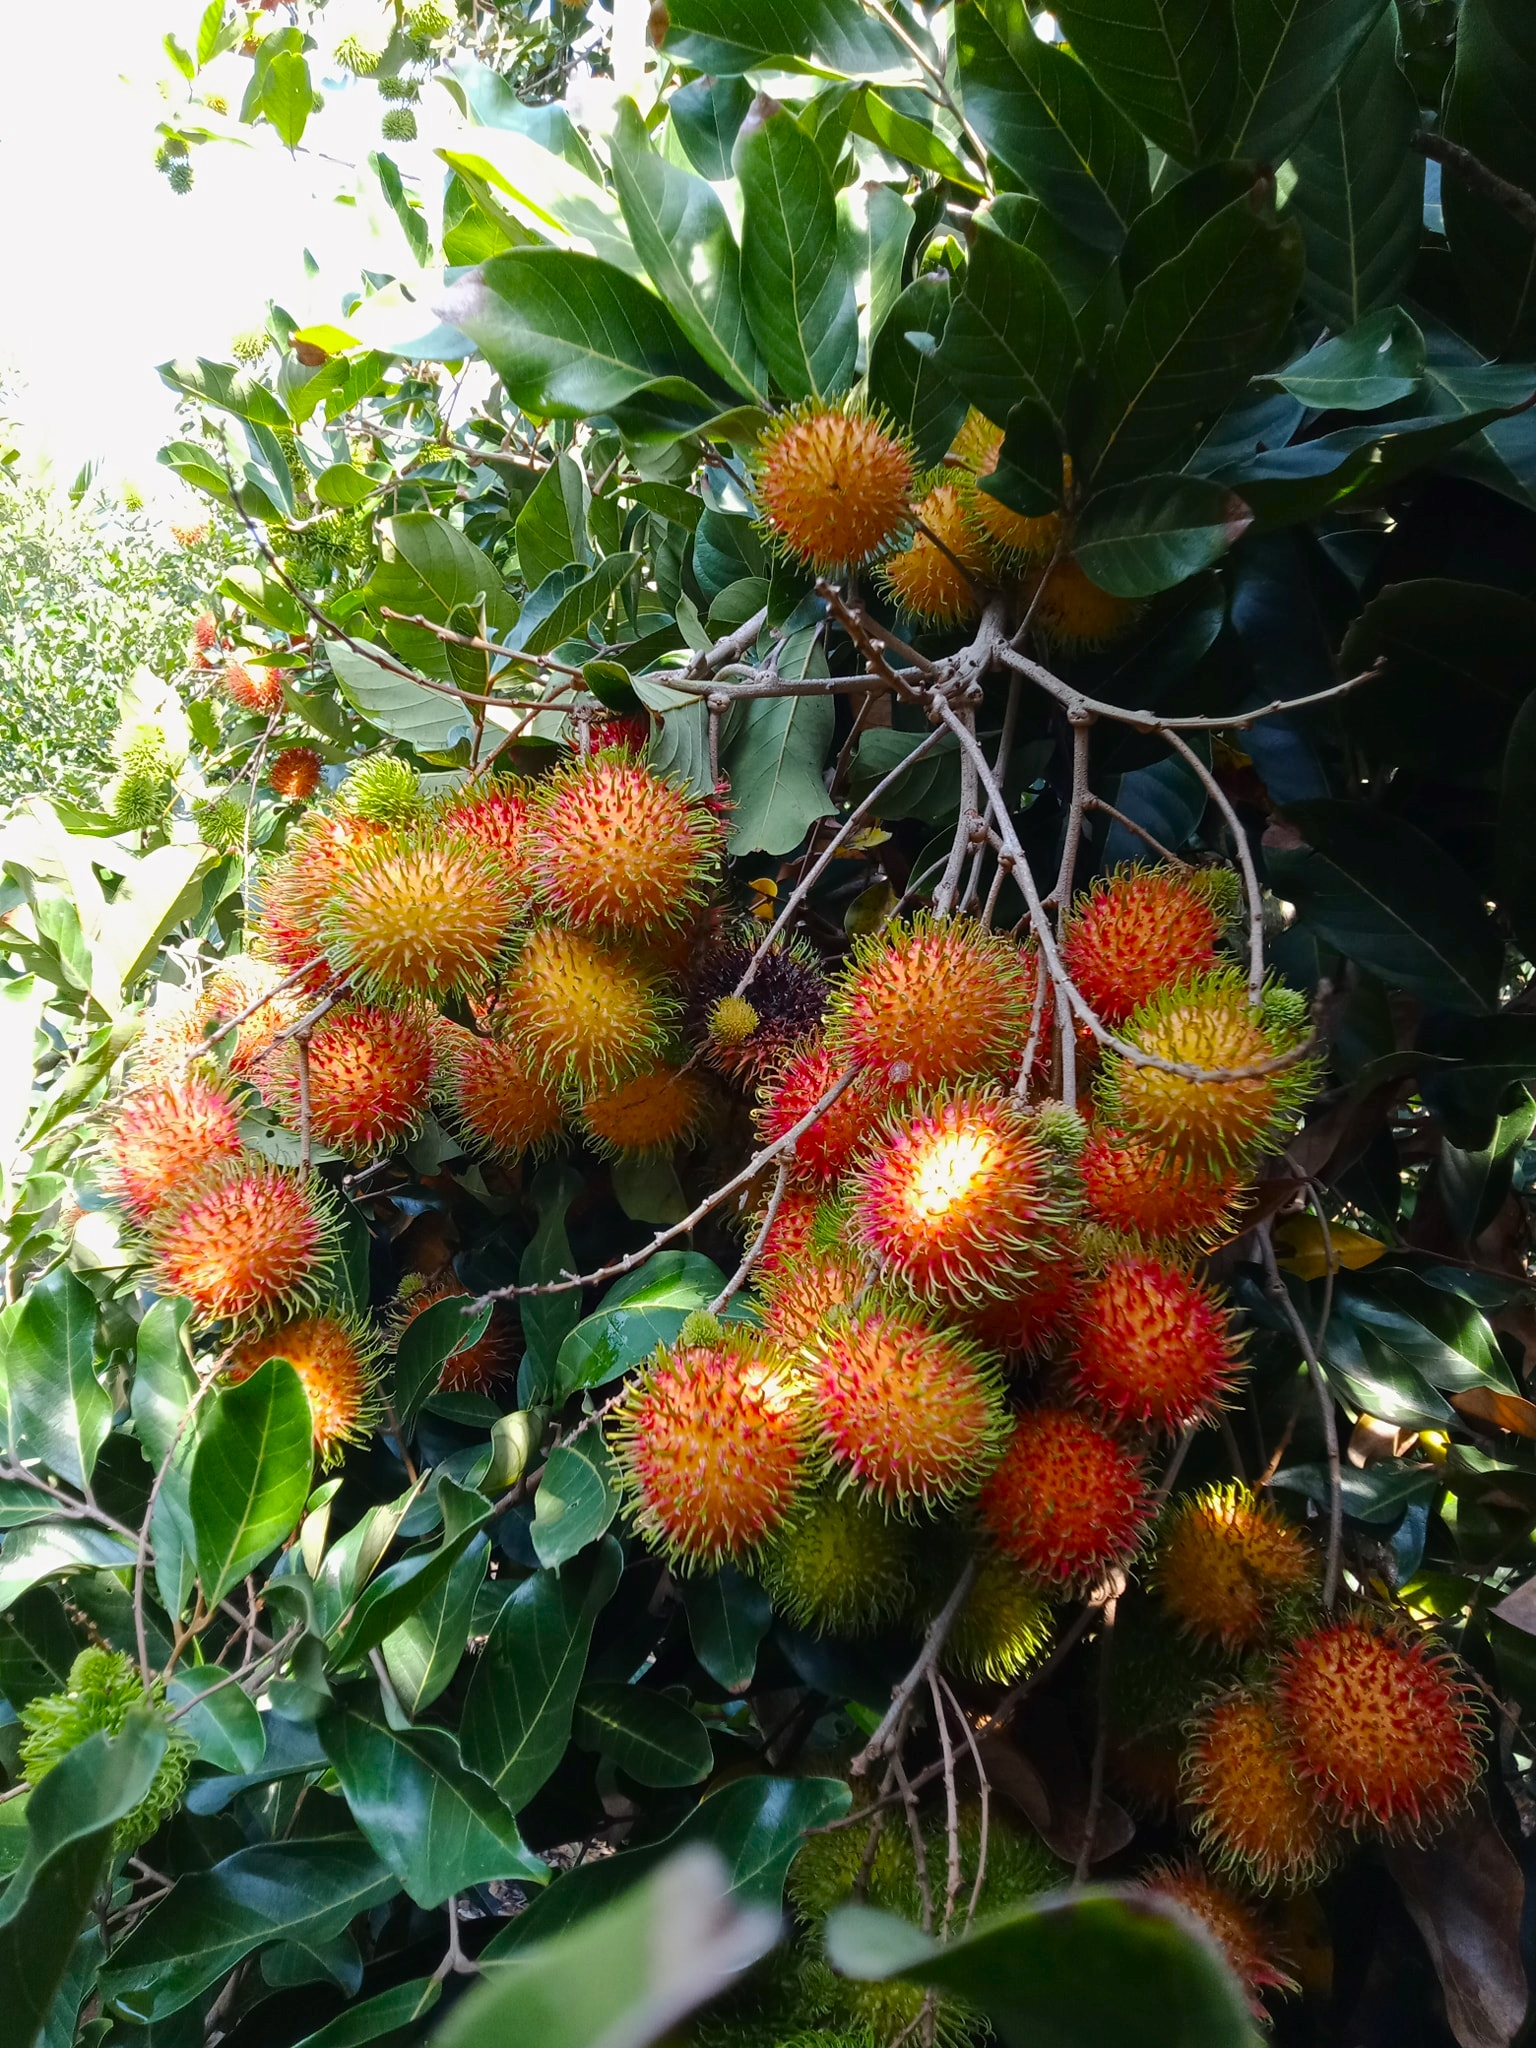 Địa điểm giải trí nhung-vuon-trai-cay-triu-qua-gan-tp-hcm Những vườn trái cây trĩu quả gần TP HCM Du lịch  